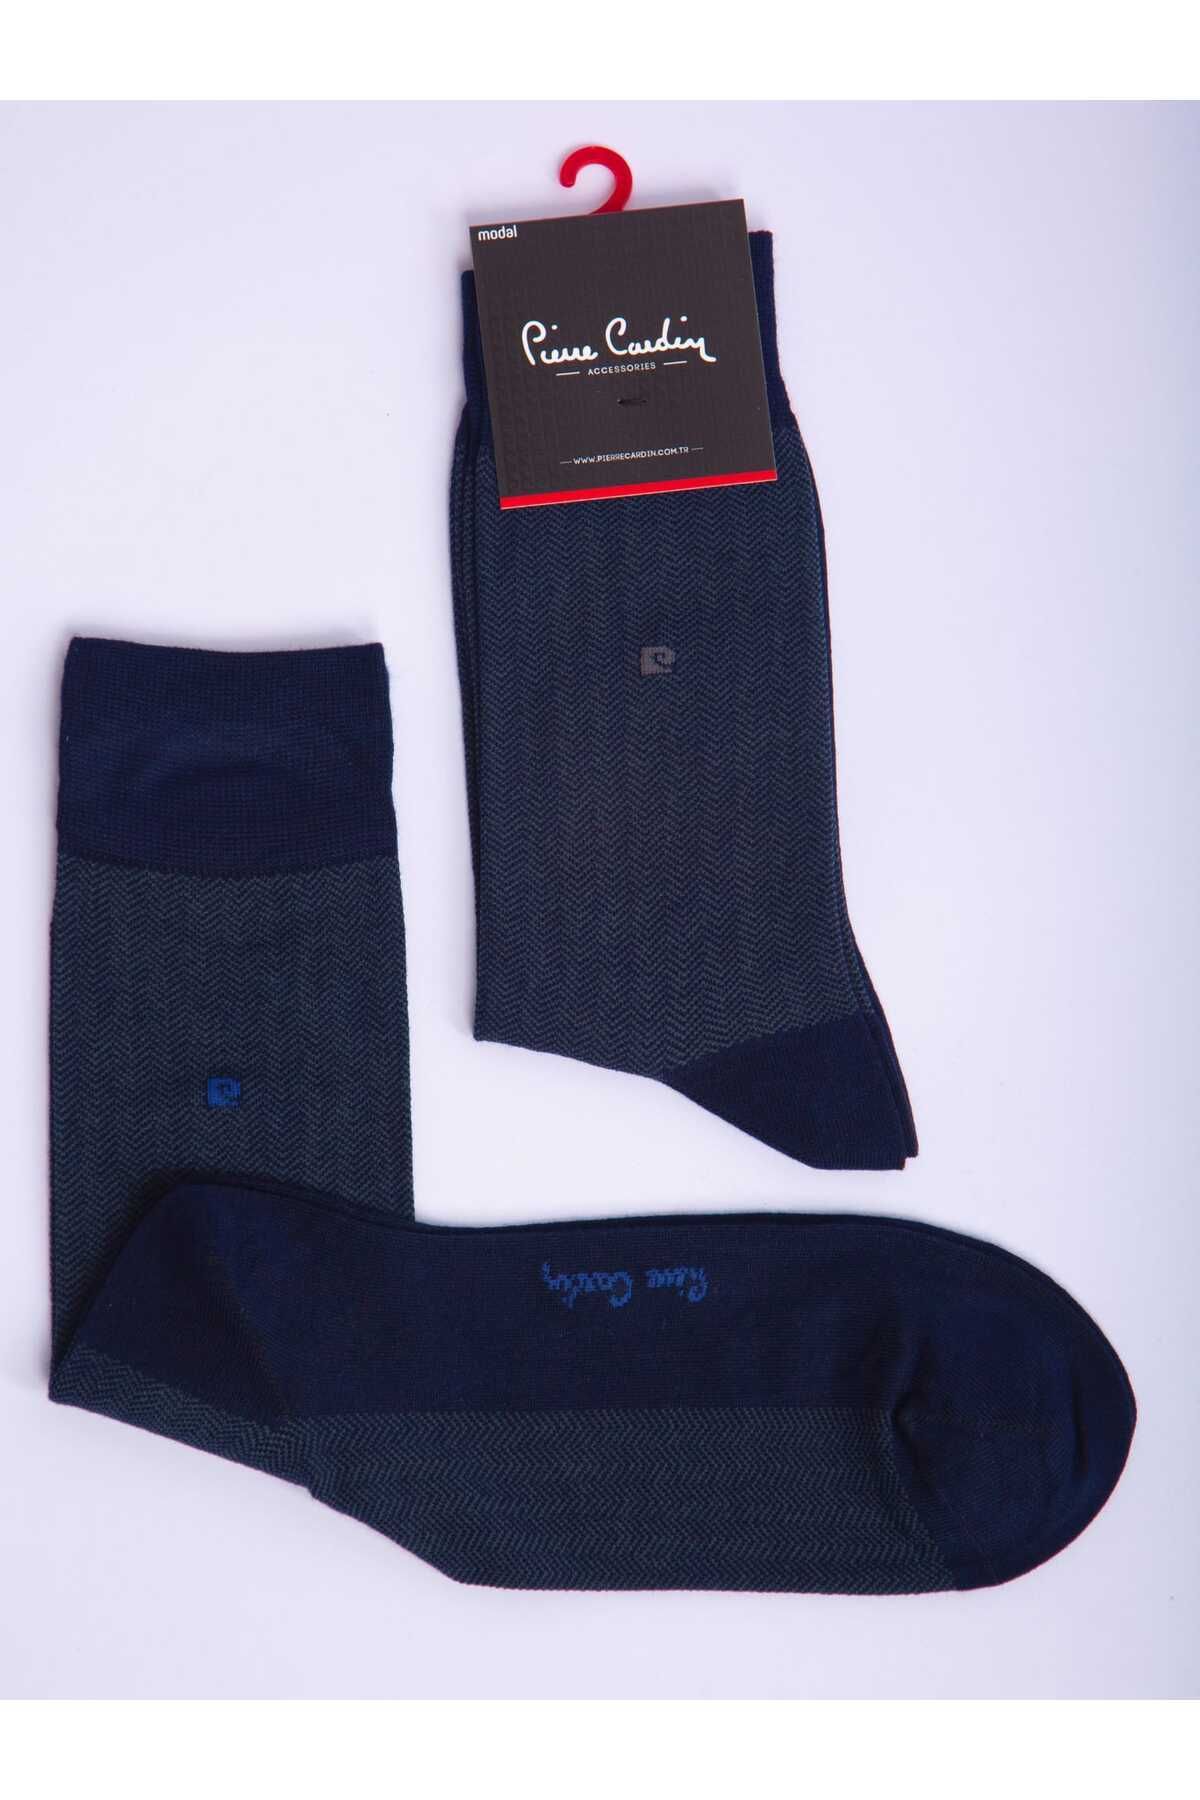 Pierre Cardin Modal Tekli Lacivert Renkli Erkek Uzun Klasik Soket Çorap Code 291